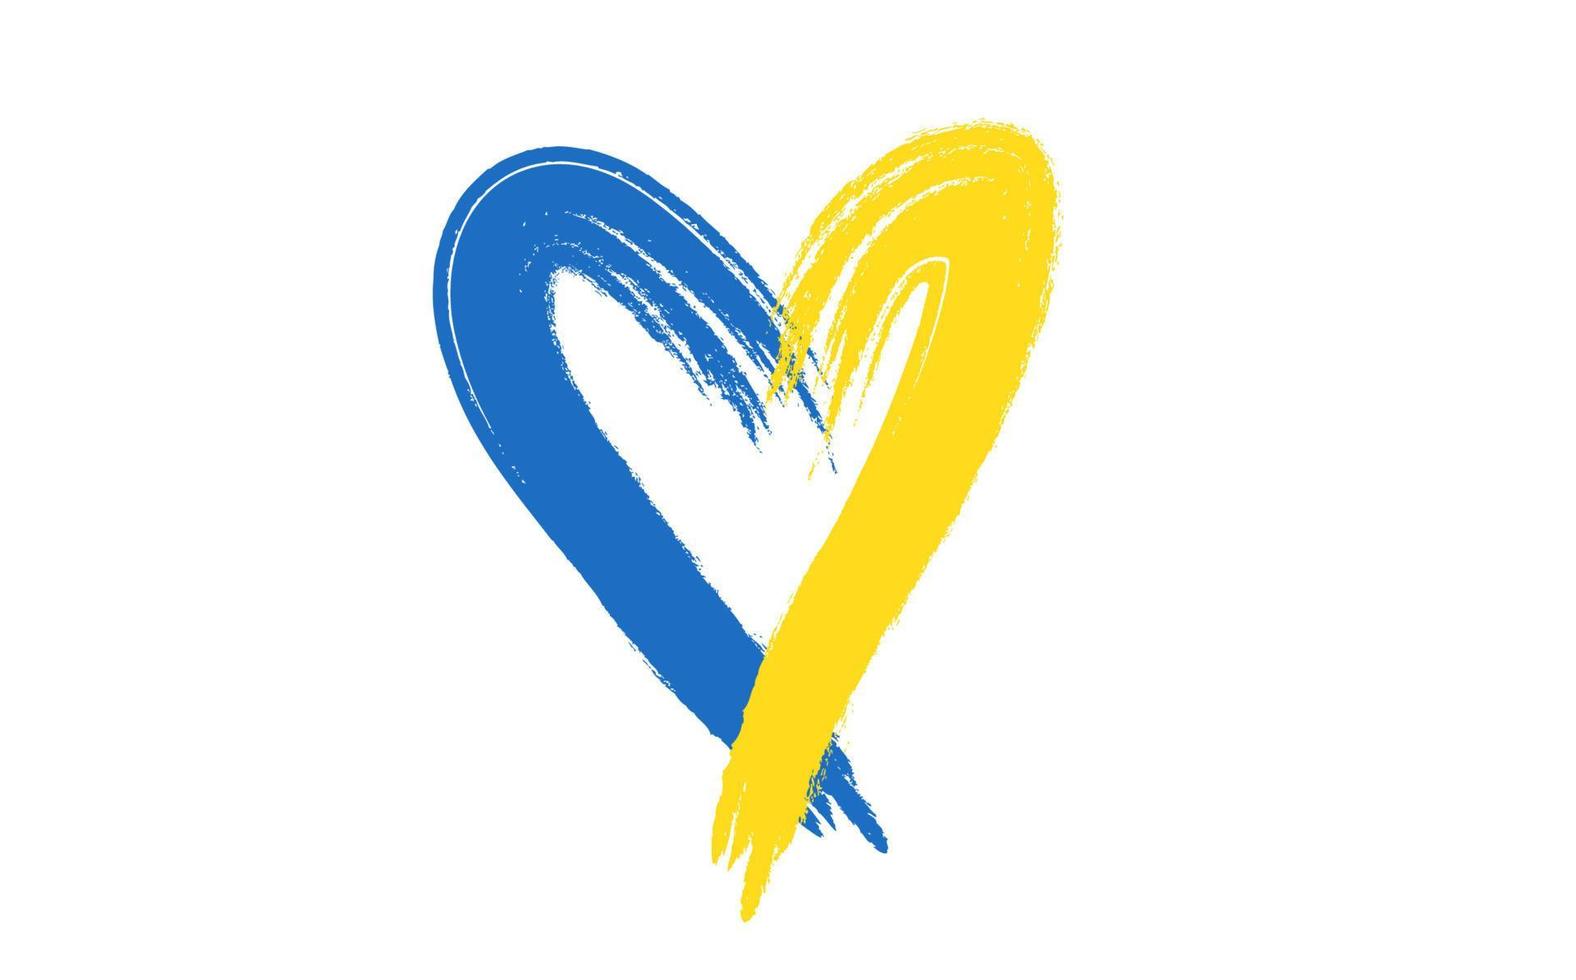 Grunge-Pinselstrich mit ukrainischer Nationalflagge, Herzform-Symbol mit Farben der ukrainischen Flagge. symbol, plakat, banner der krise im ukraine-konzept. Vektor isoliert auf weißem Hintergrund